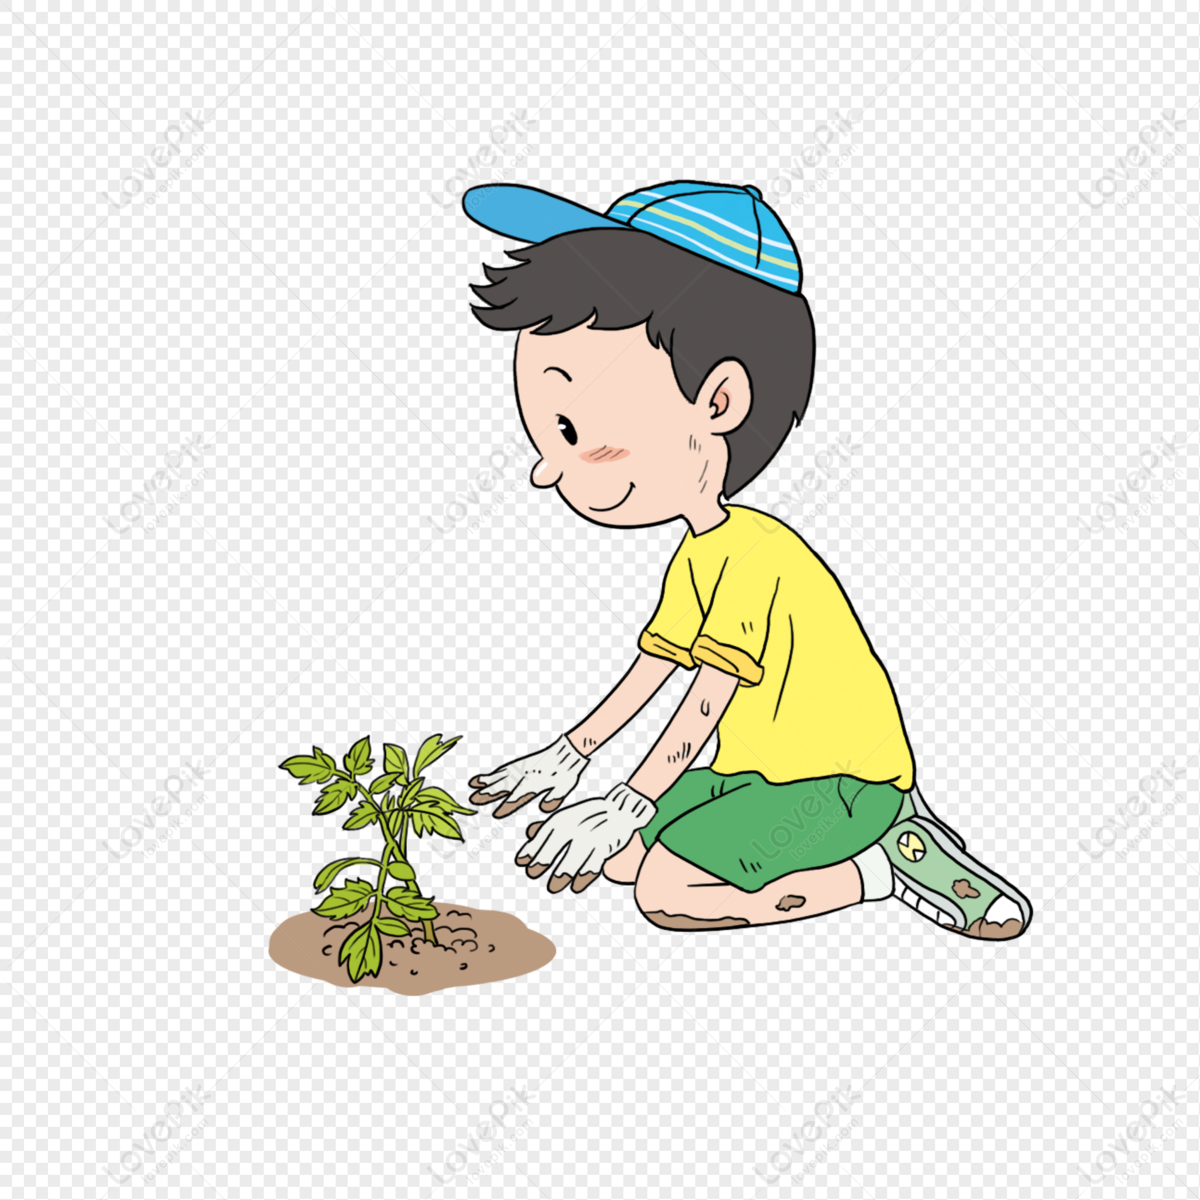 Planting boy. Дети сажают цветы на прозрачном фоне. Дети садят на прозрачном фоне. Мальчик сажает цветы. Мальчик без фона.